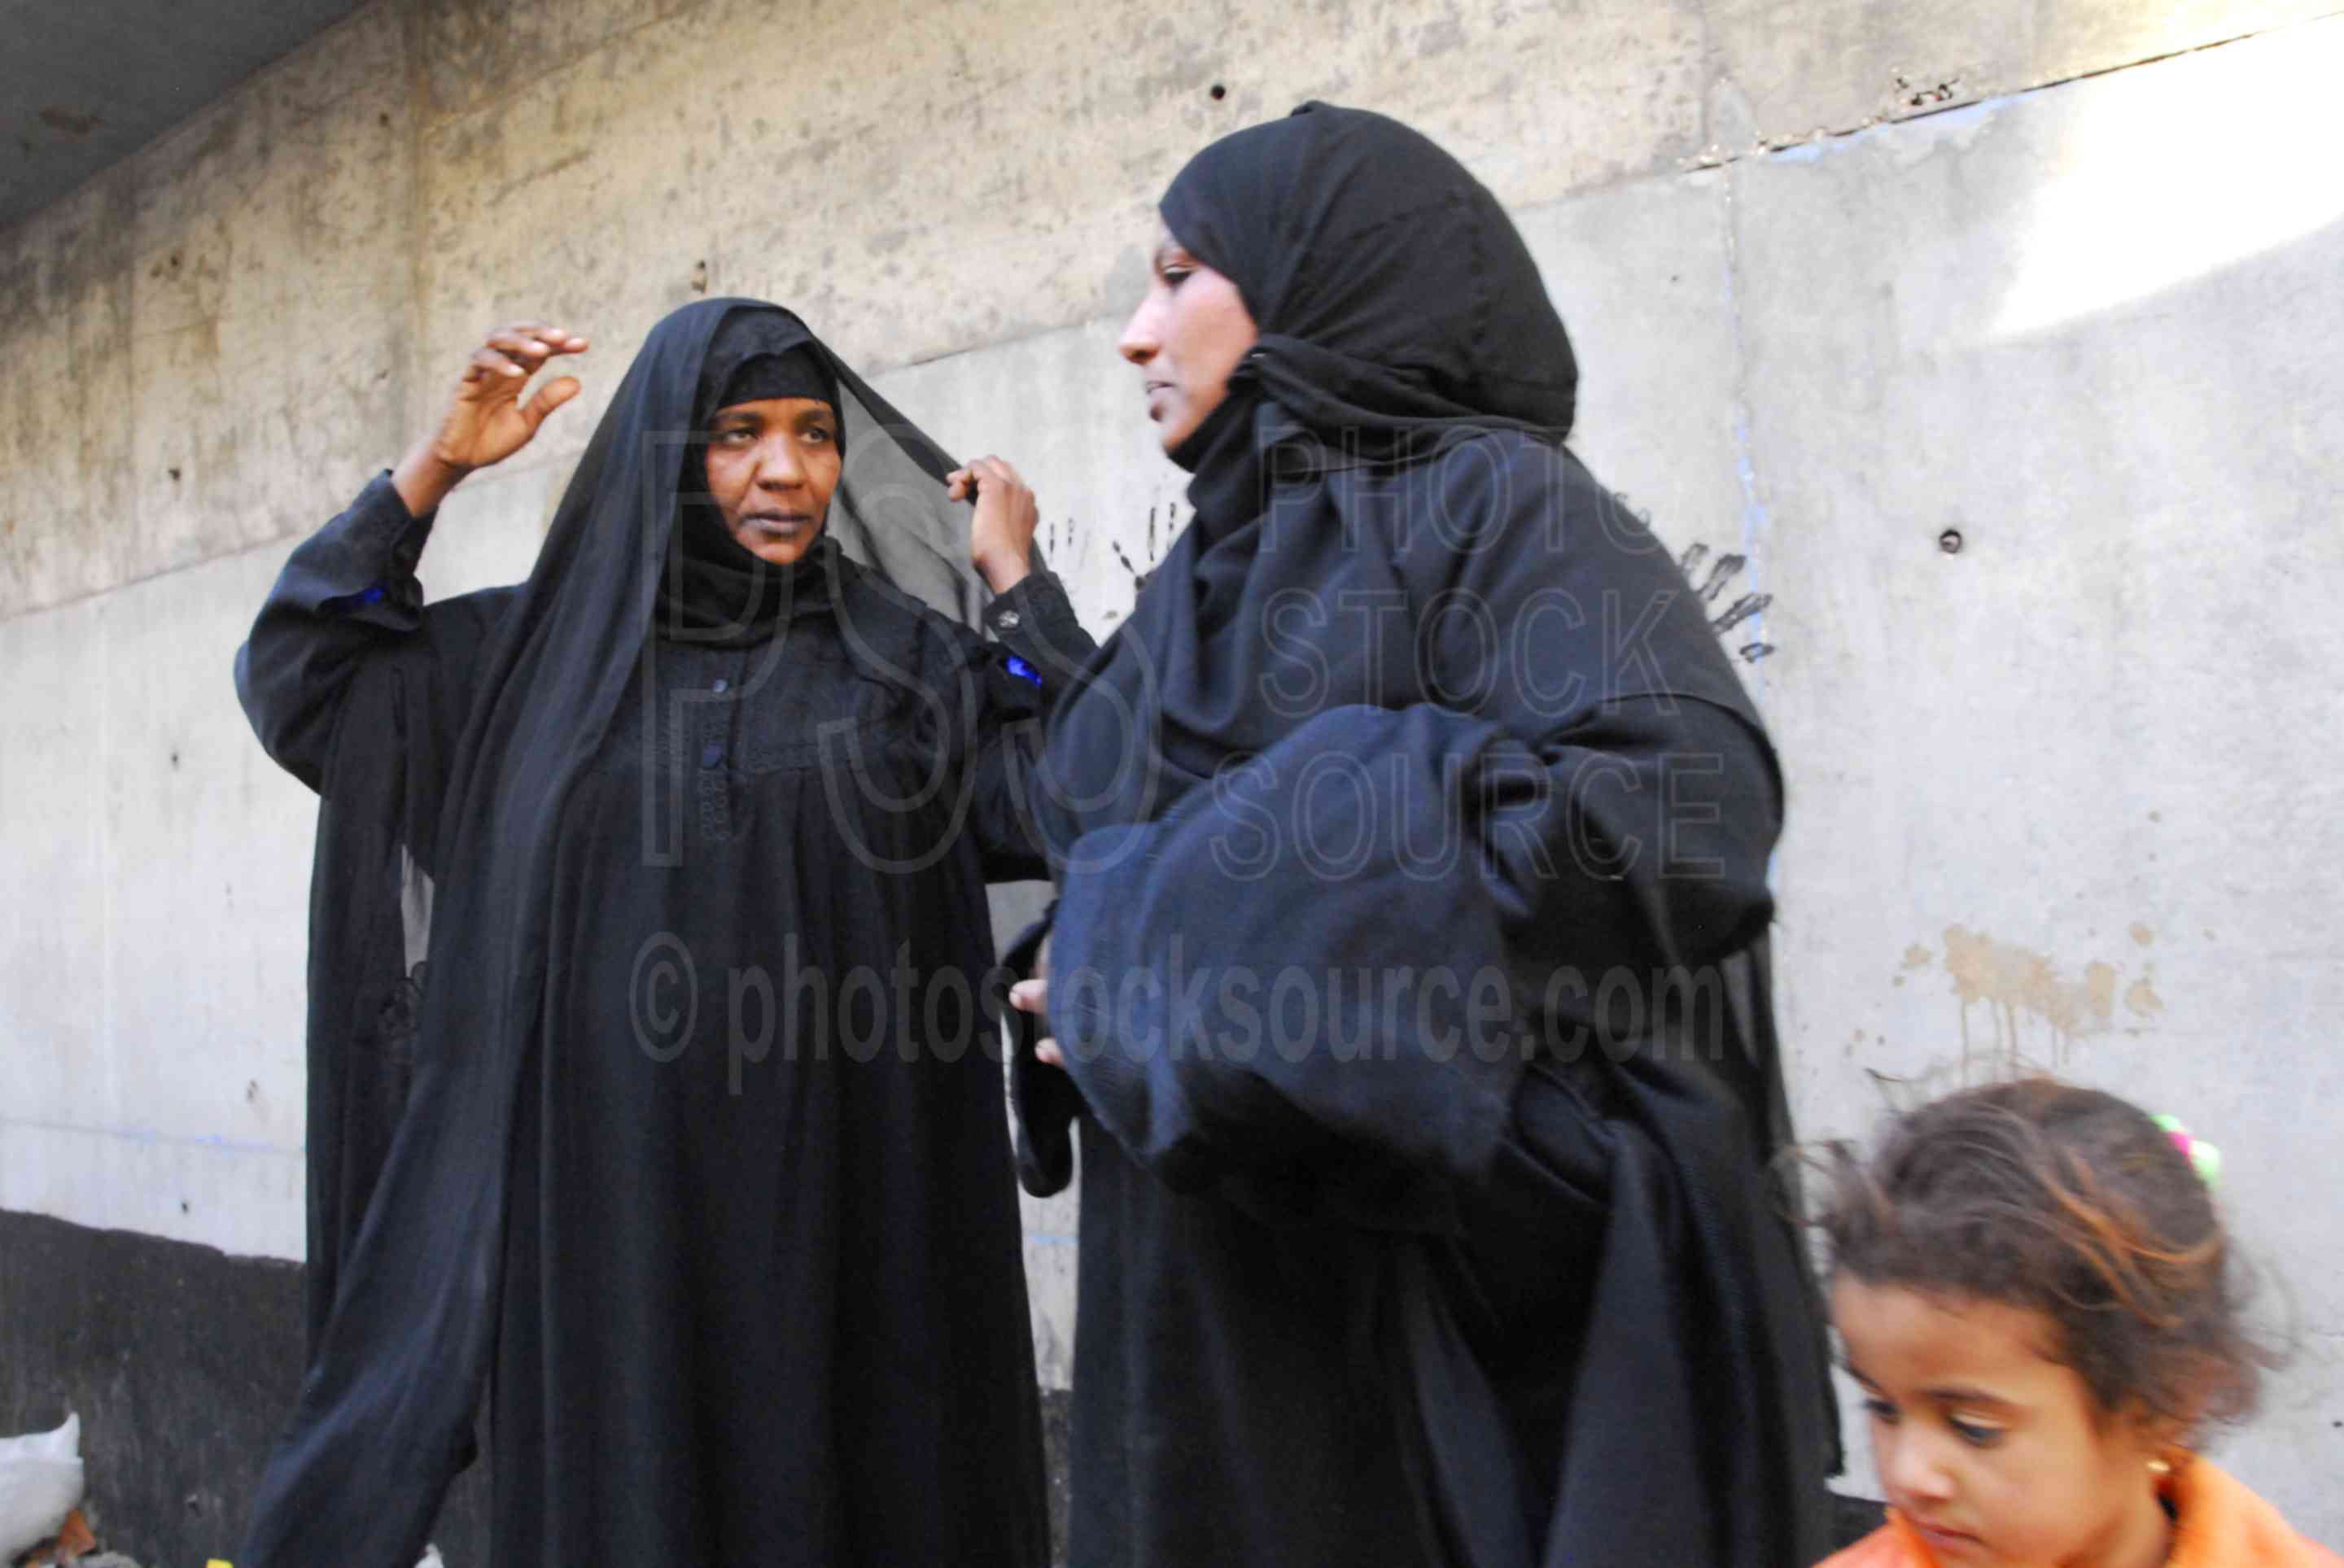 Women Visiting,market,woman,man,child,burqa,hajib